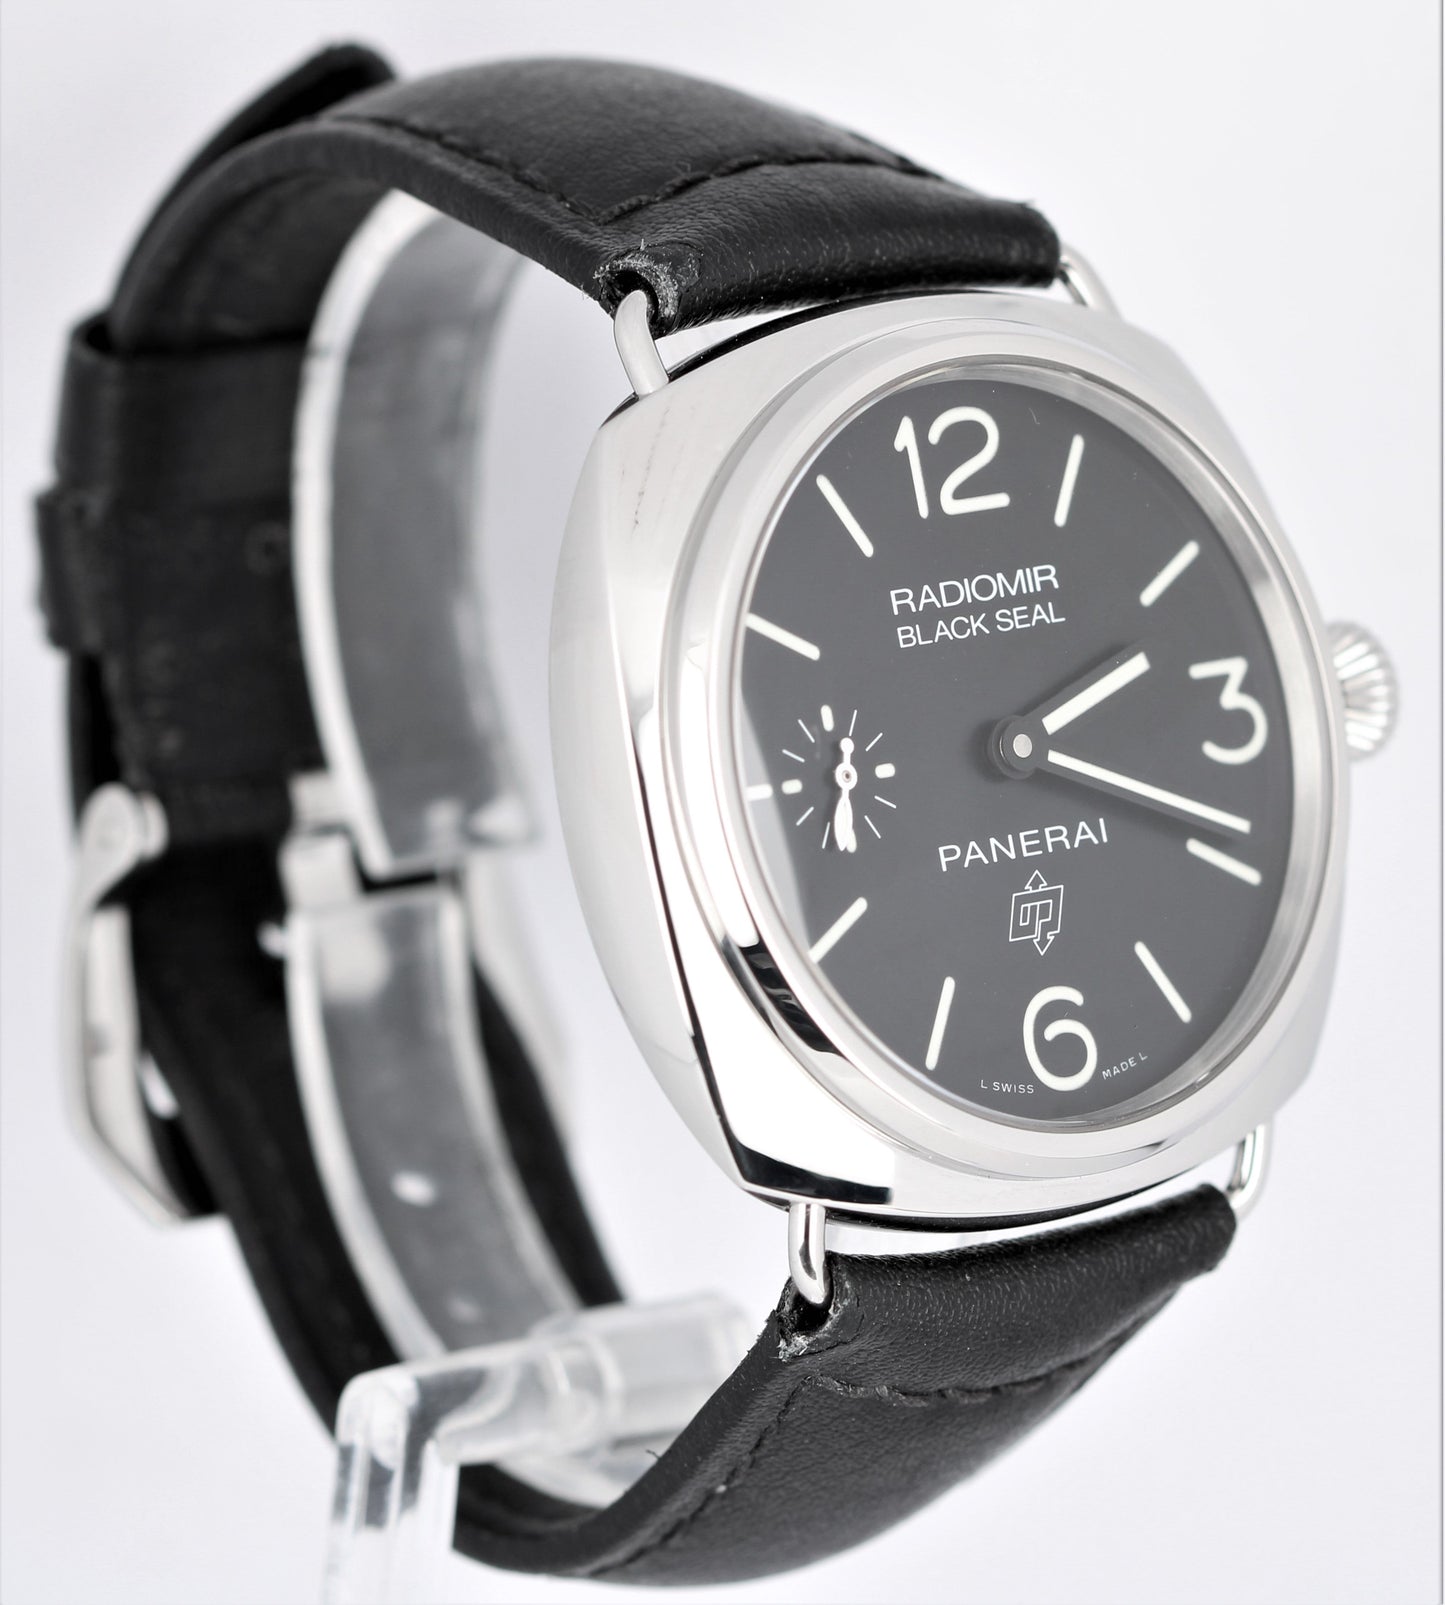 Panerai Radiomir Black Seal Stainless Steel Black 45mm PAM00380 OP6826 LTD Watch